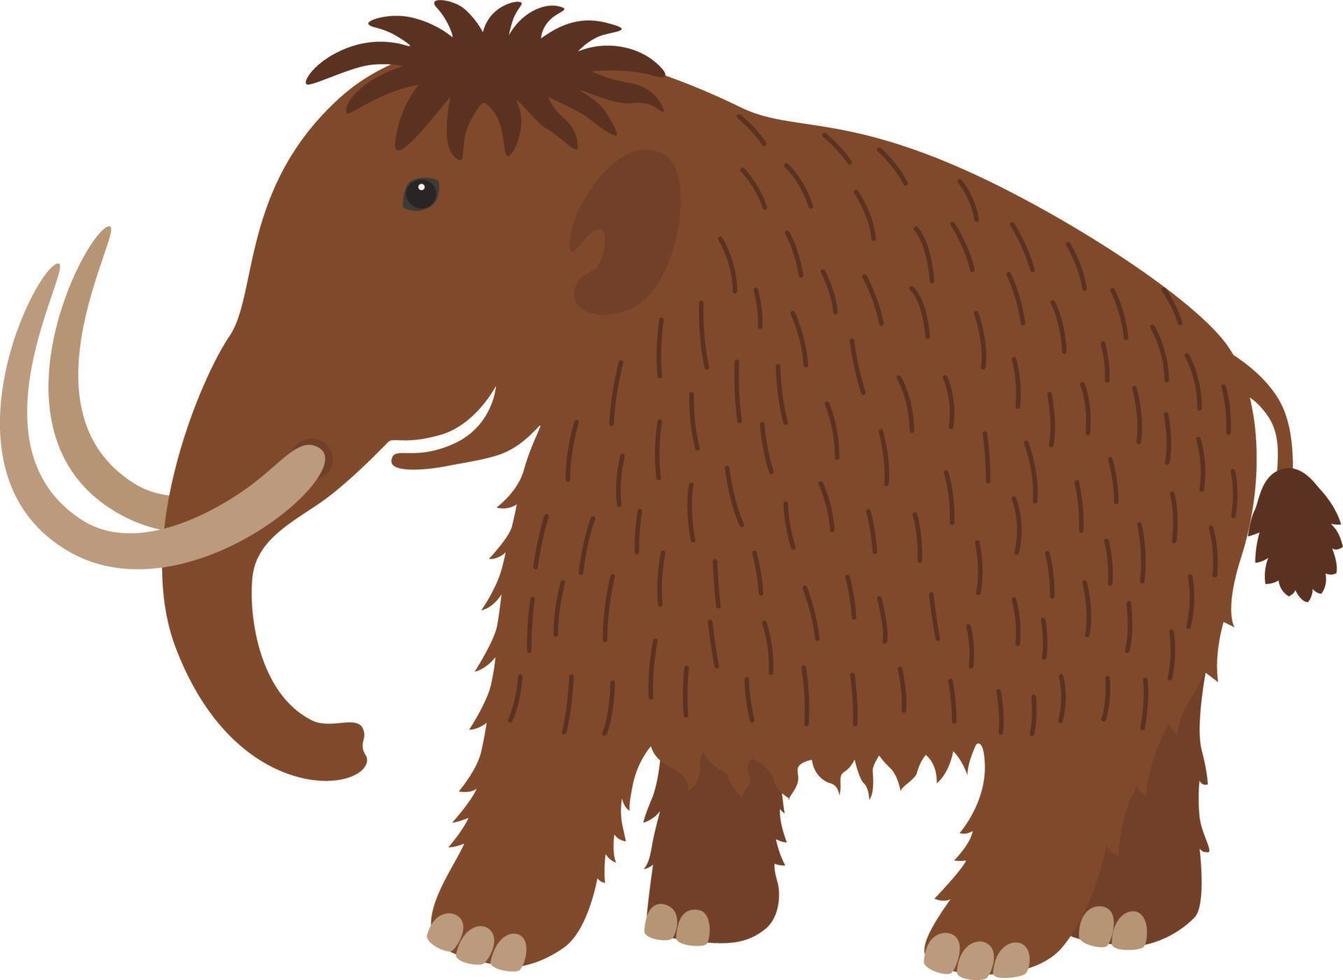 Mammut uralt Tier Illustration vektor